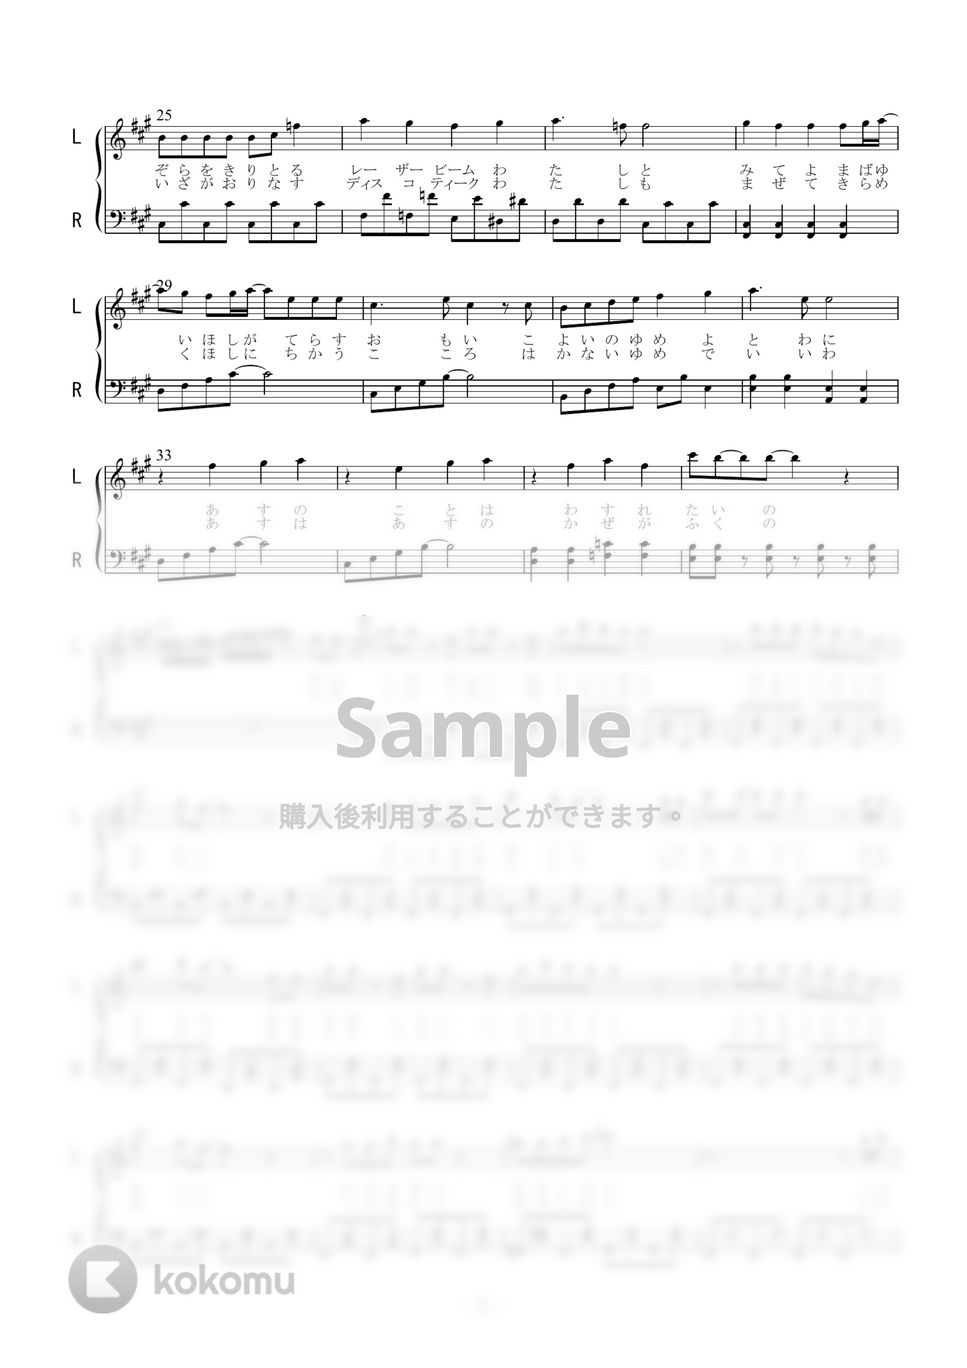 μ’Ｓ - 輝夜の城で踊りたい (ピアノソロ) by 二次元楽譜製作所